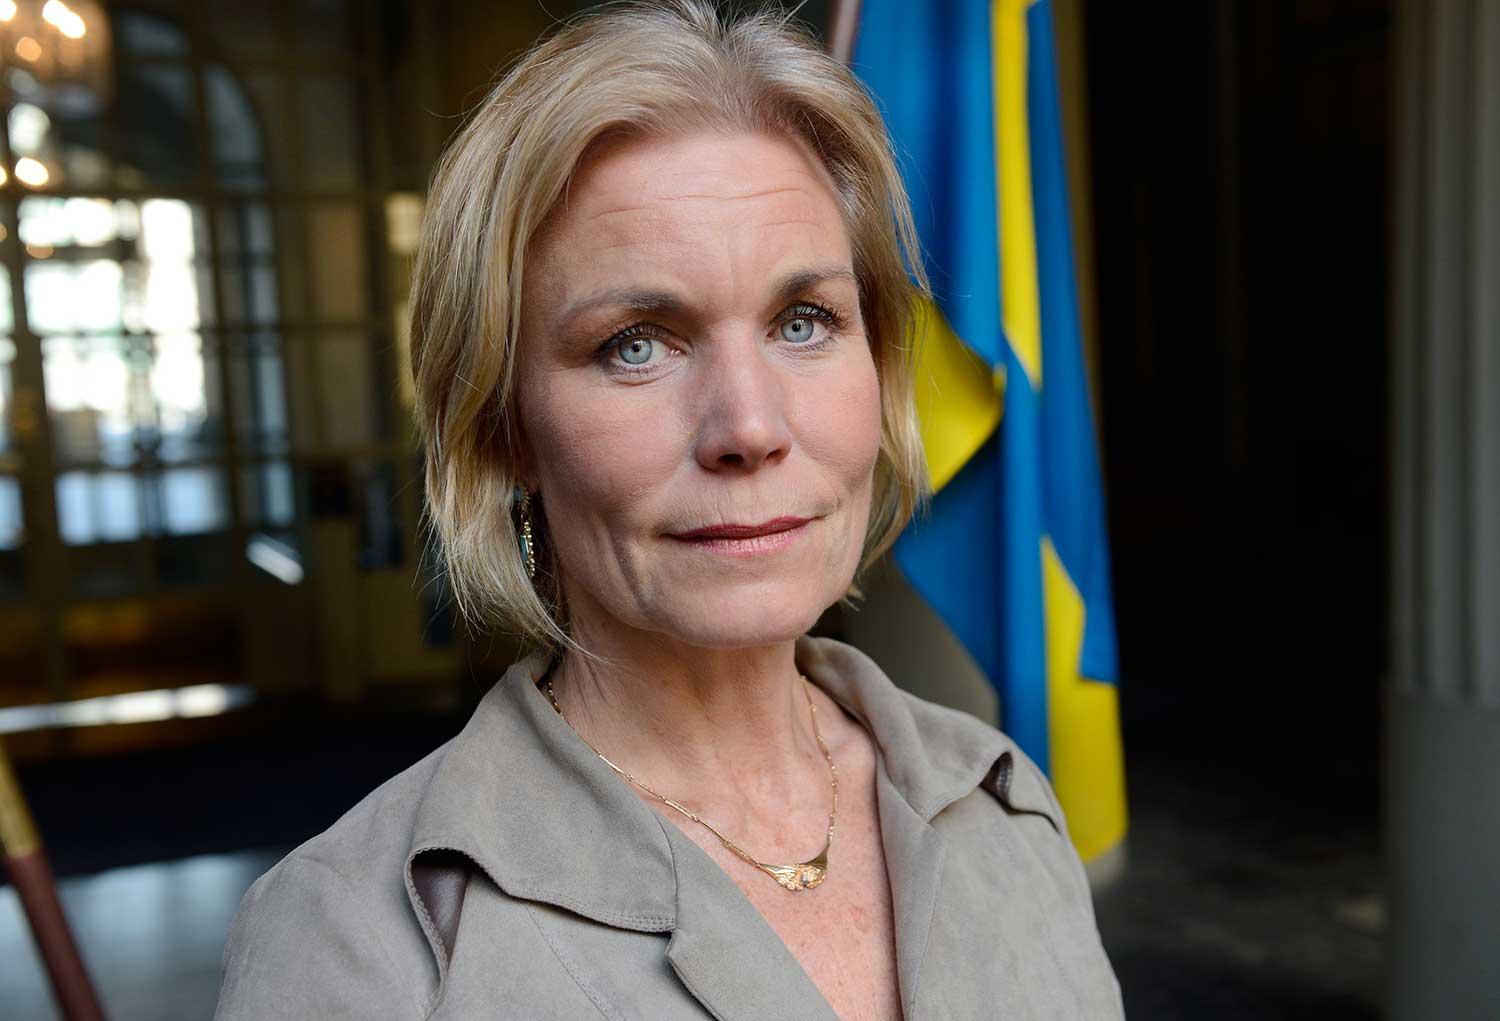 Dåvarande biståndsminister Gunilla Carlsson (M) skrev i oktober 2007 ett brev till Eurasia Foundation där hon å Sidas och Sveriges vägnar utlovade ett bidrag på motsvarande 23 miljoner kronor för tre år till organisationen.